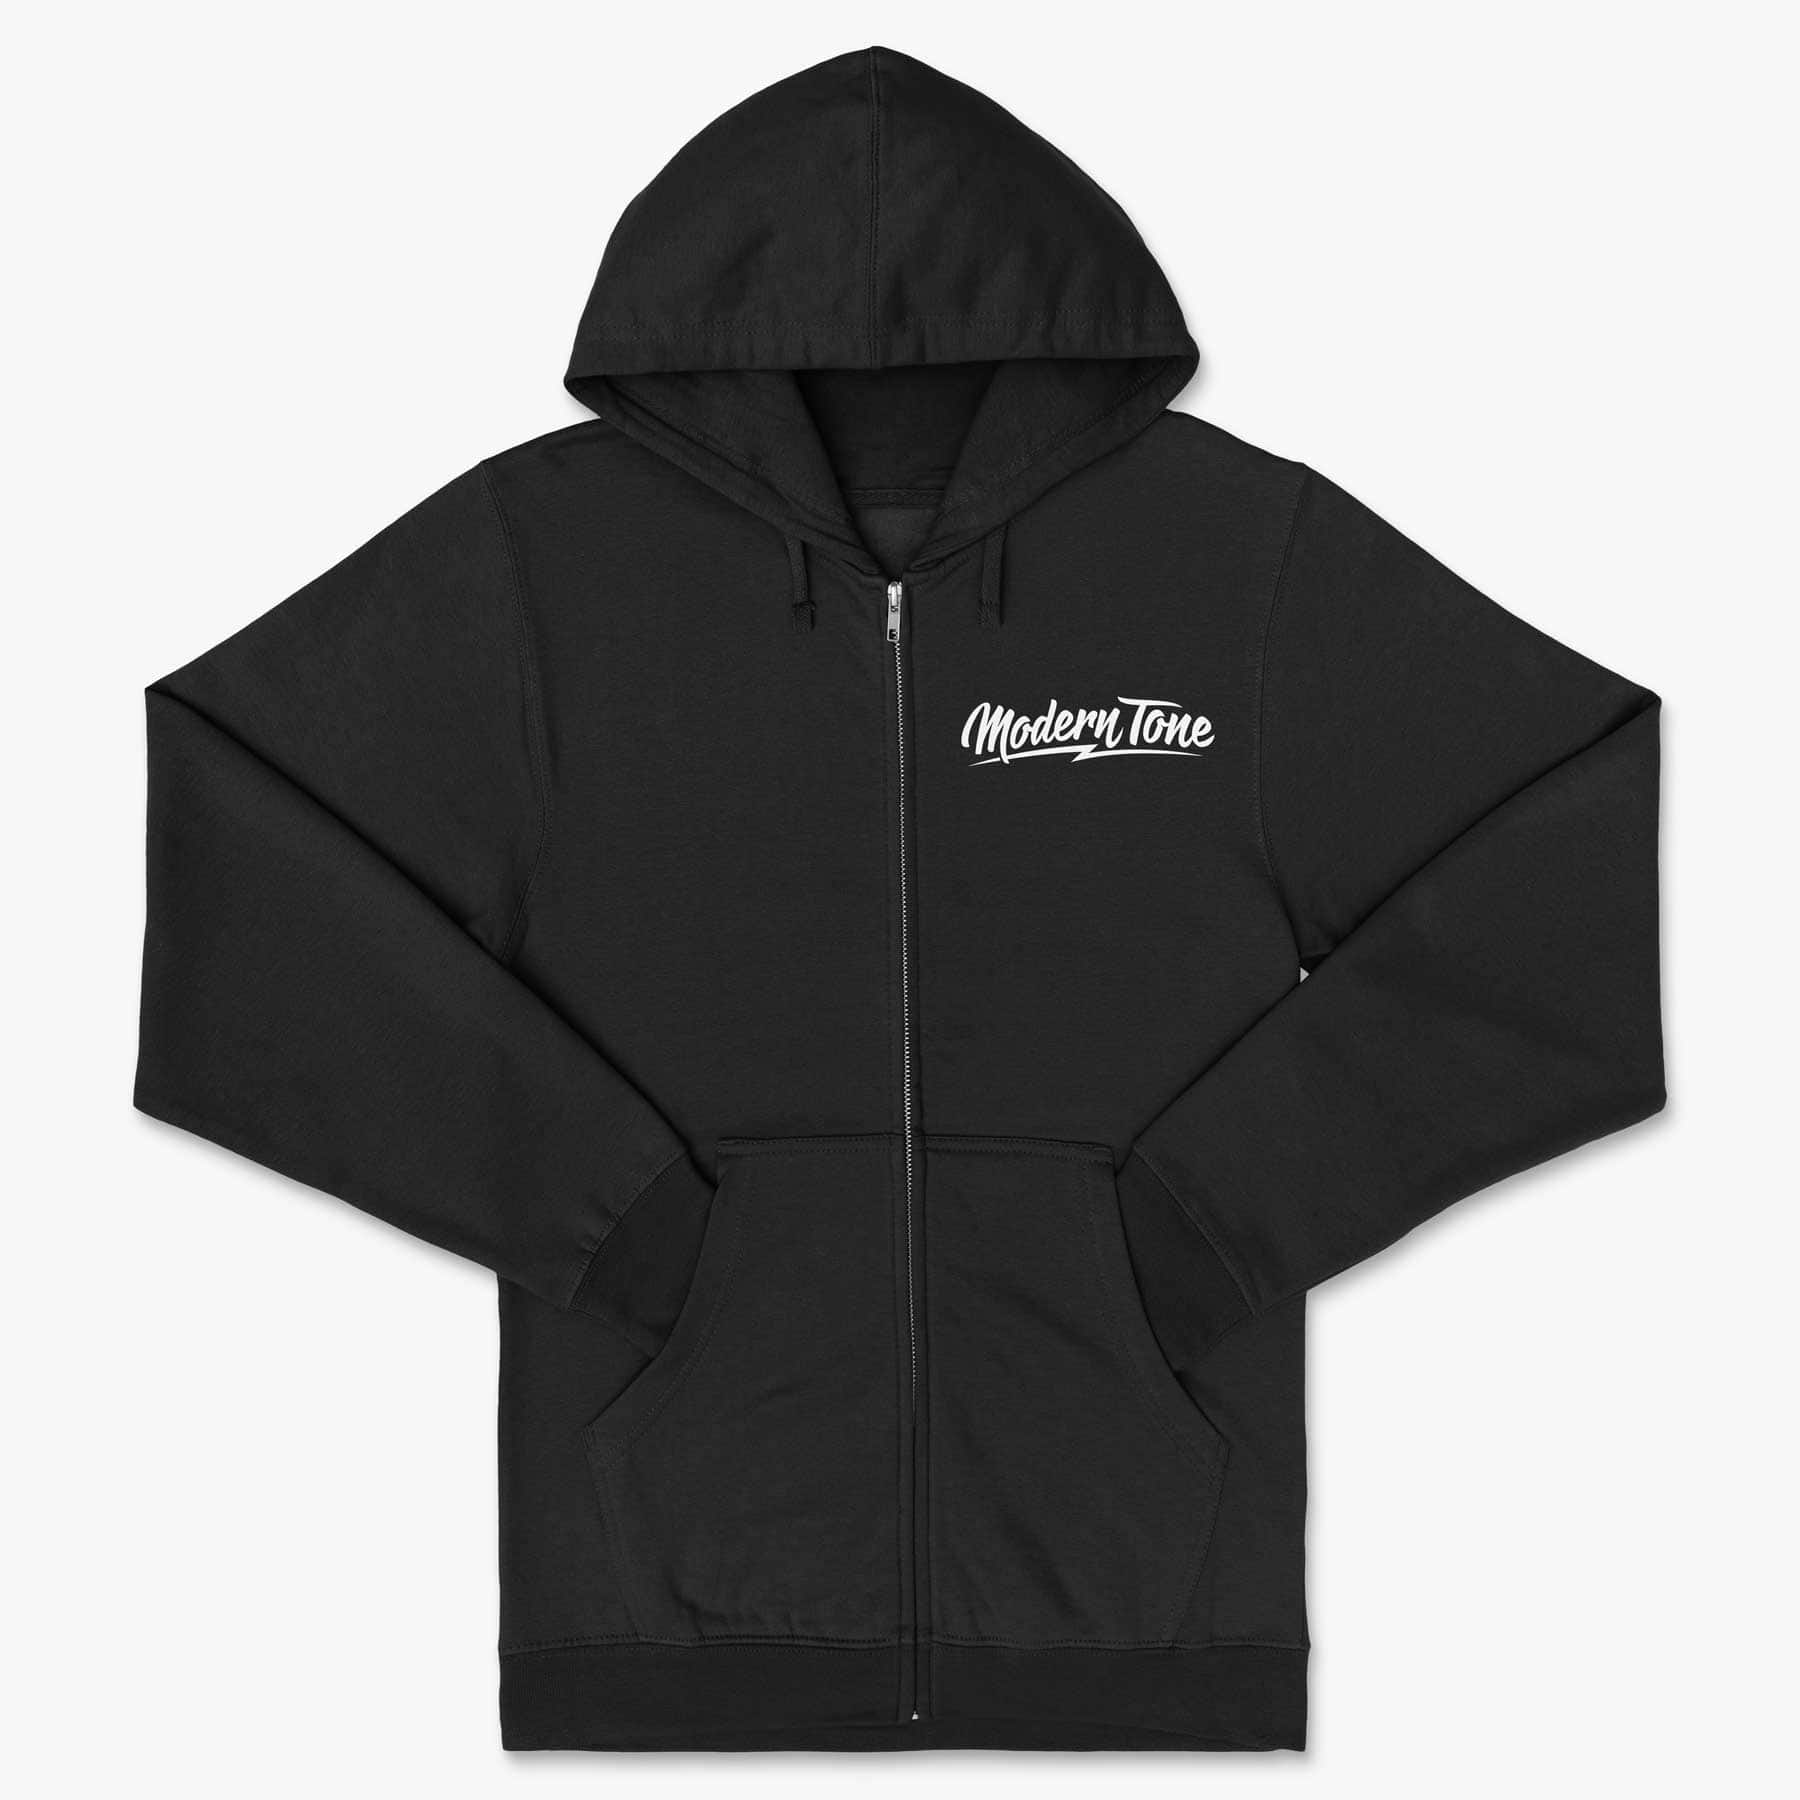 ModernTone Studios Zip Up Hoodie in Black